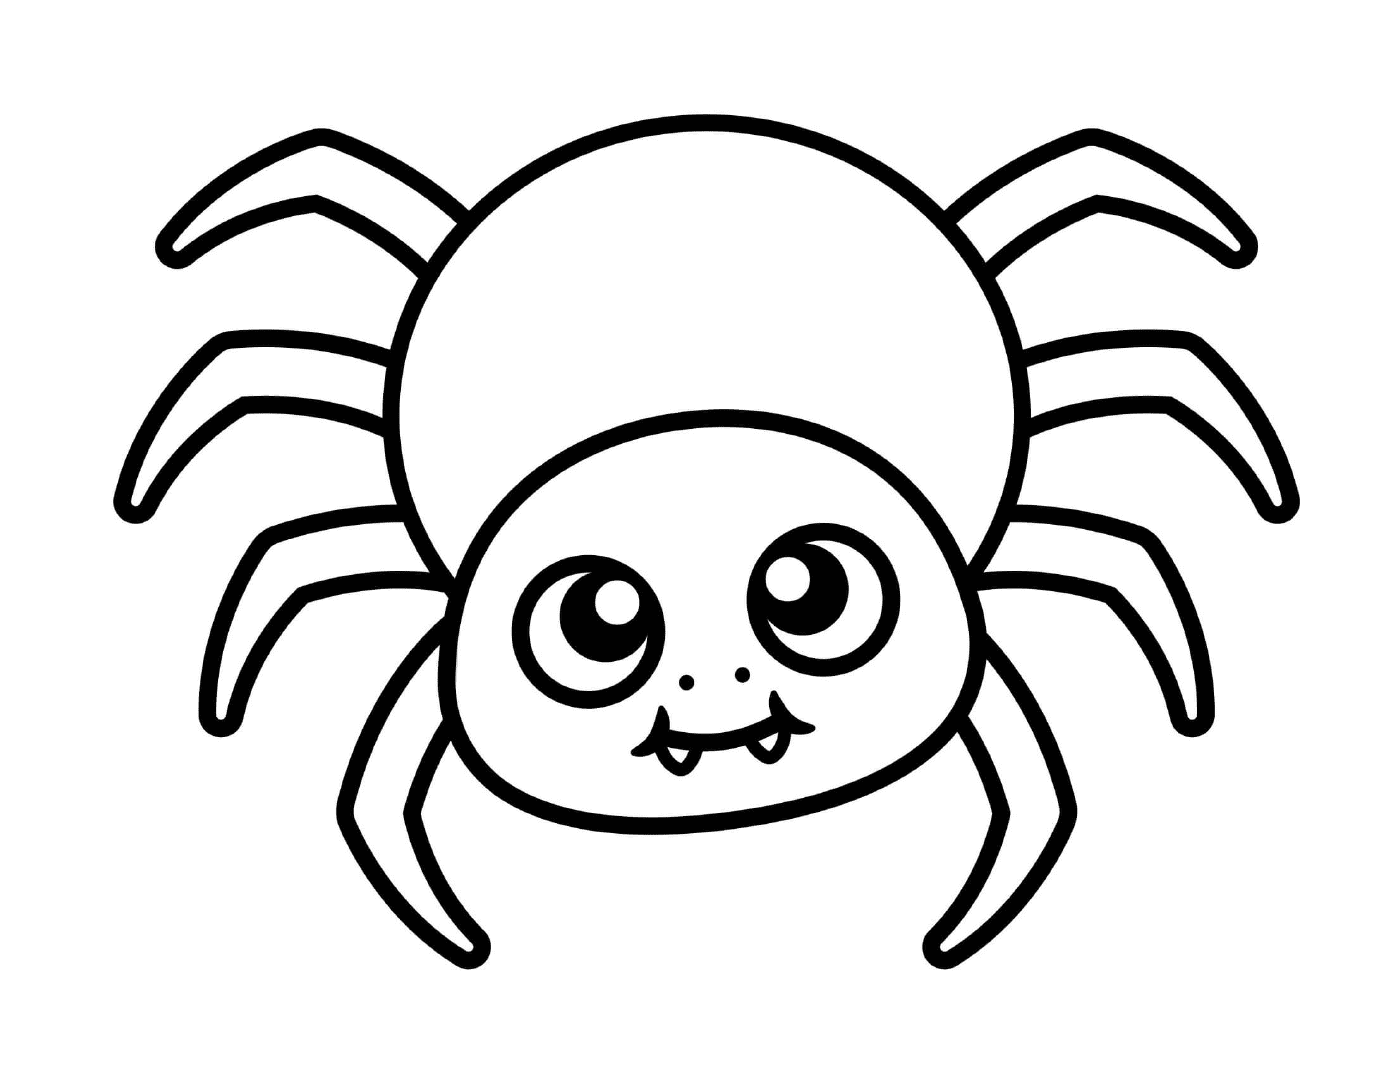  Eine niedliche und einfache Spinne für Kinder 